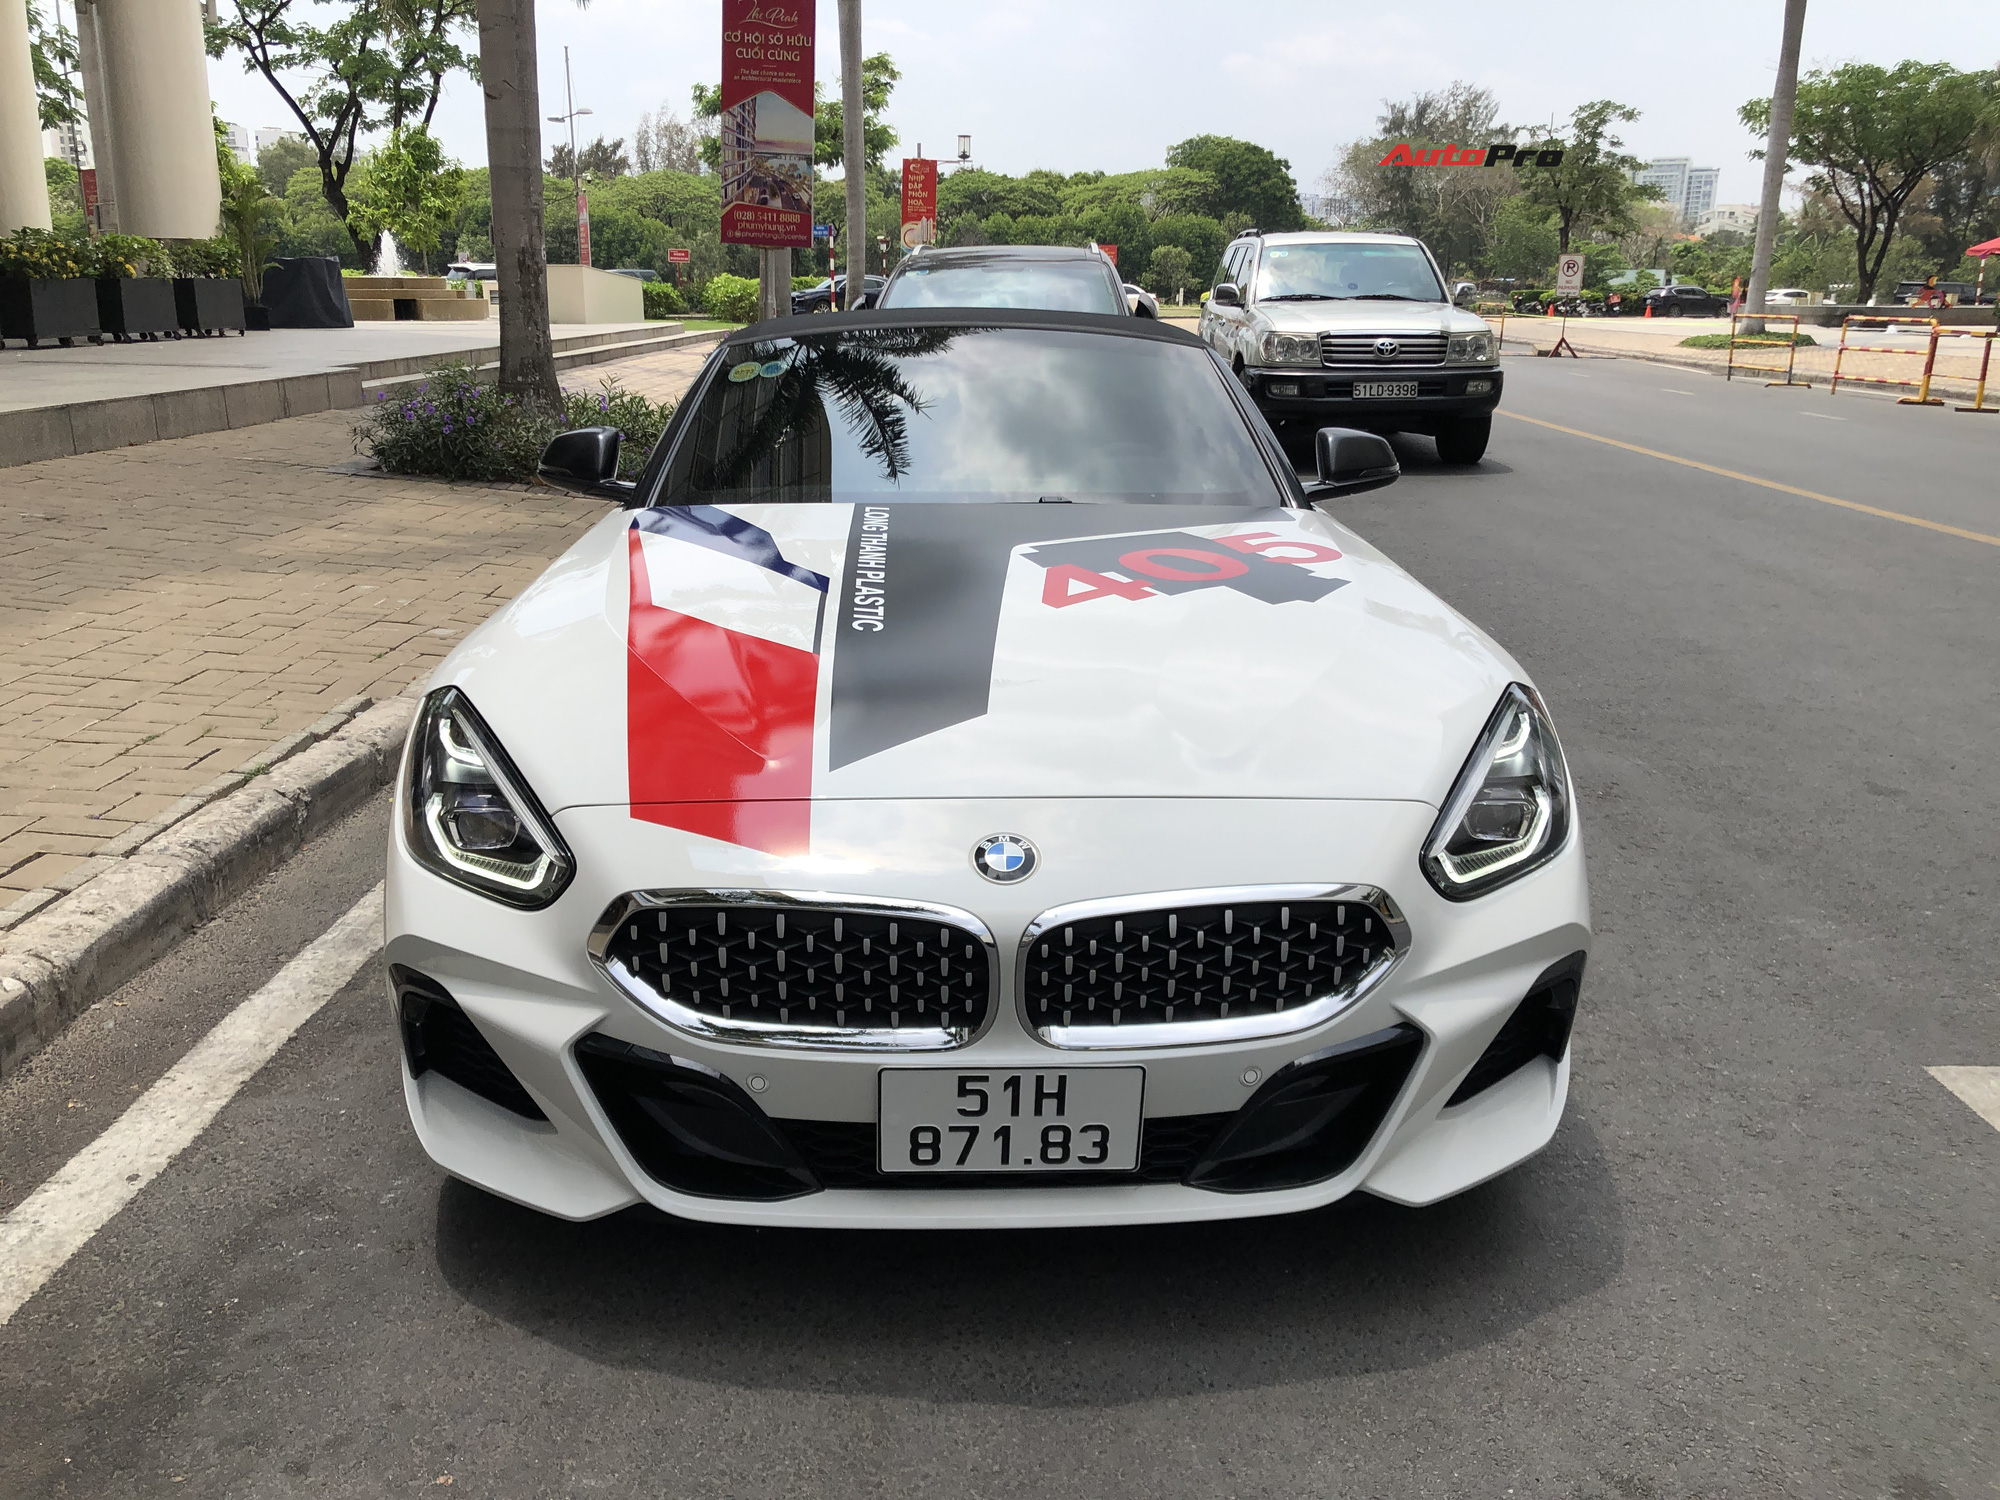 Bắt gặp BMW Z4 giá hơn 3,3 tỷ đồng của Minh ‘Nhựa’: Ngoại thất dán decal tương đồng chiếc BMW X3 vừa rao bán - Ảnh 2.